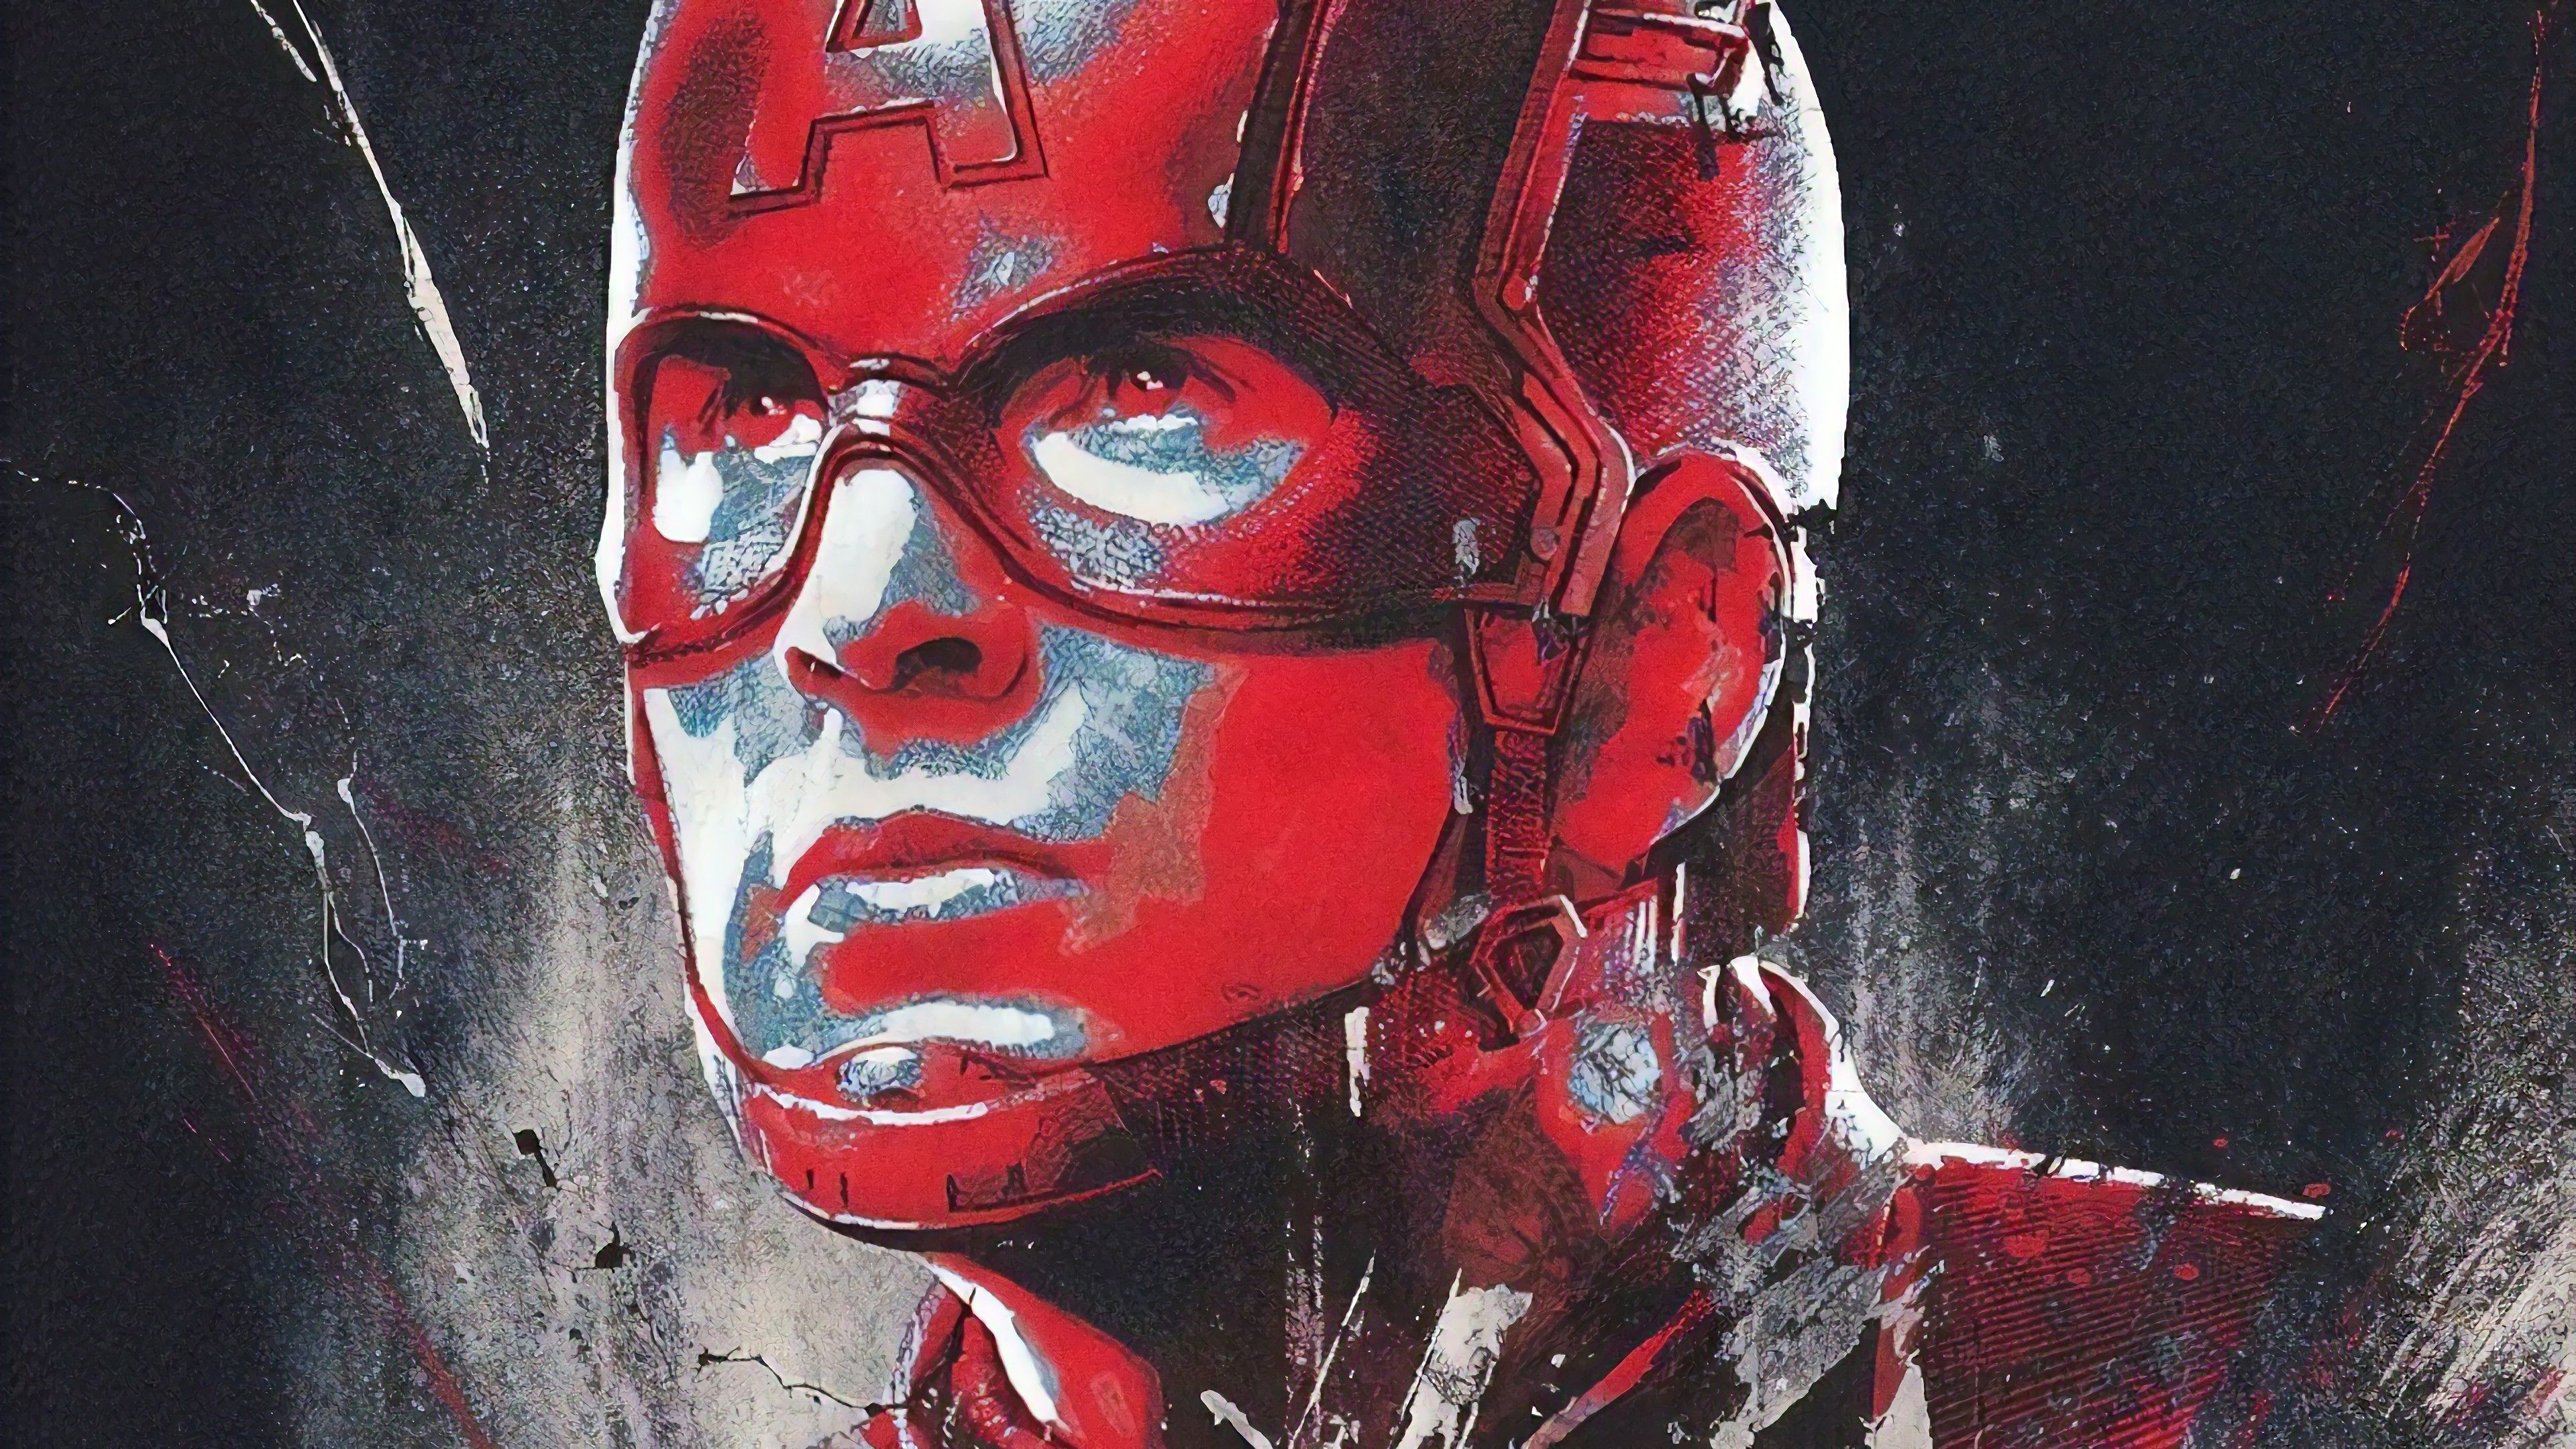 Captain America Endgame Wallpaper .wallpaperafari.com